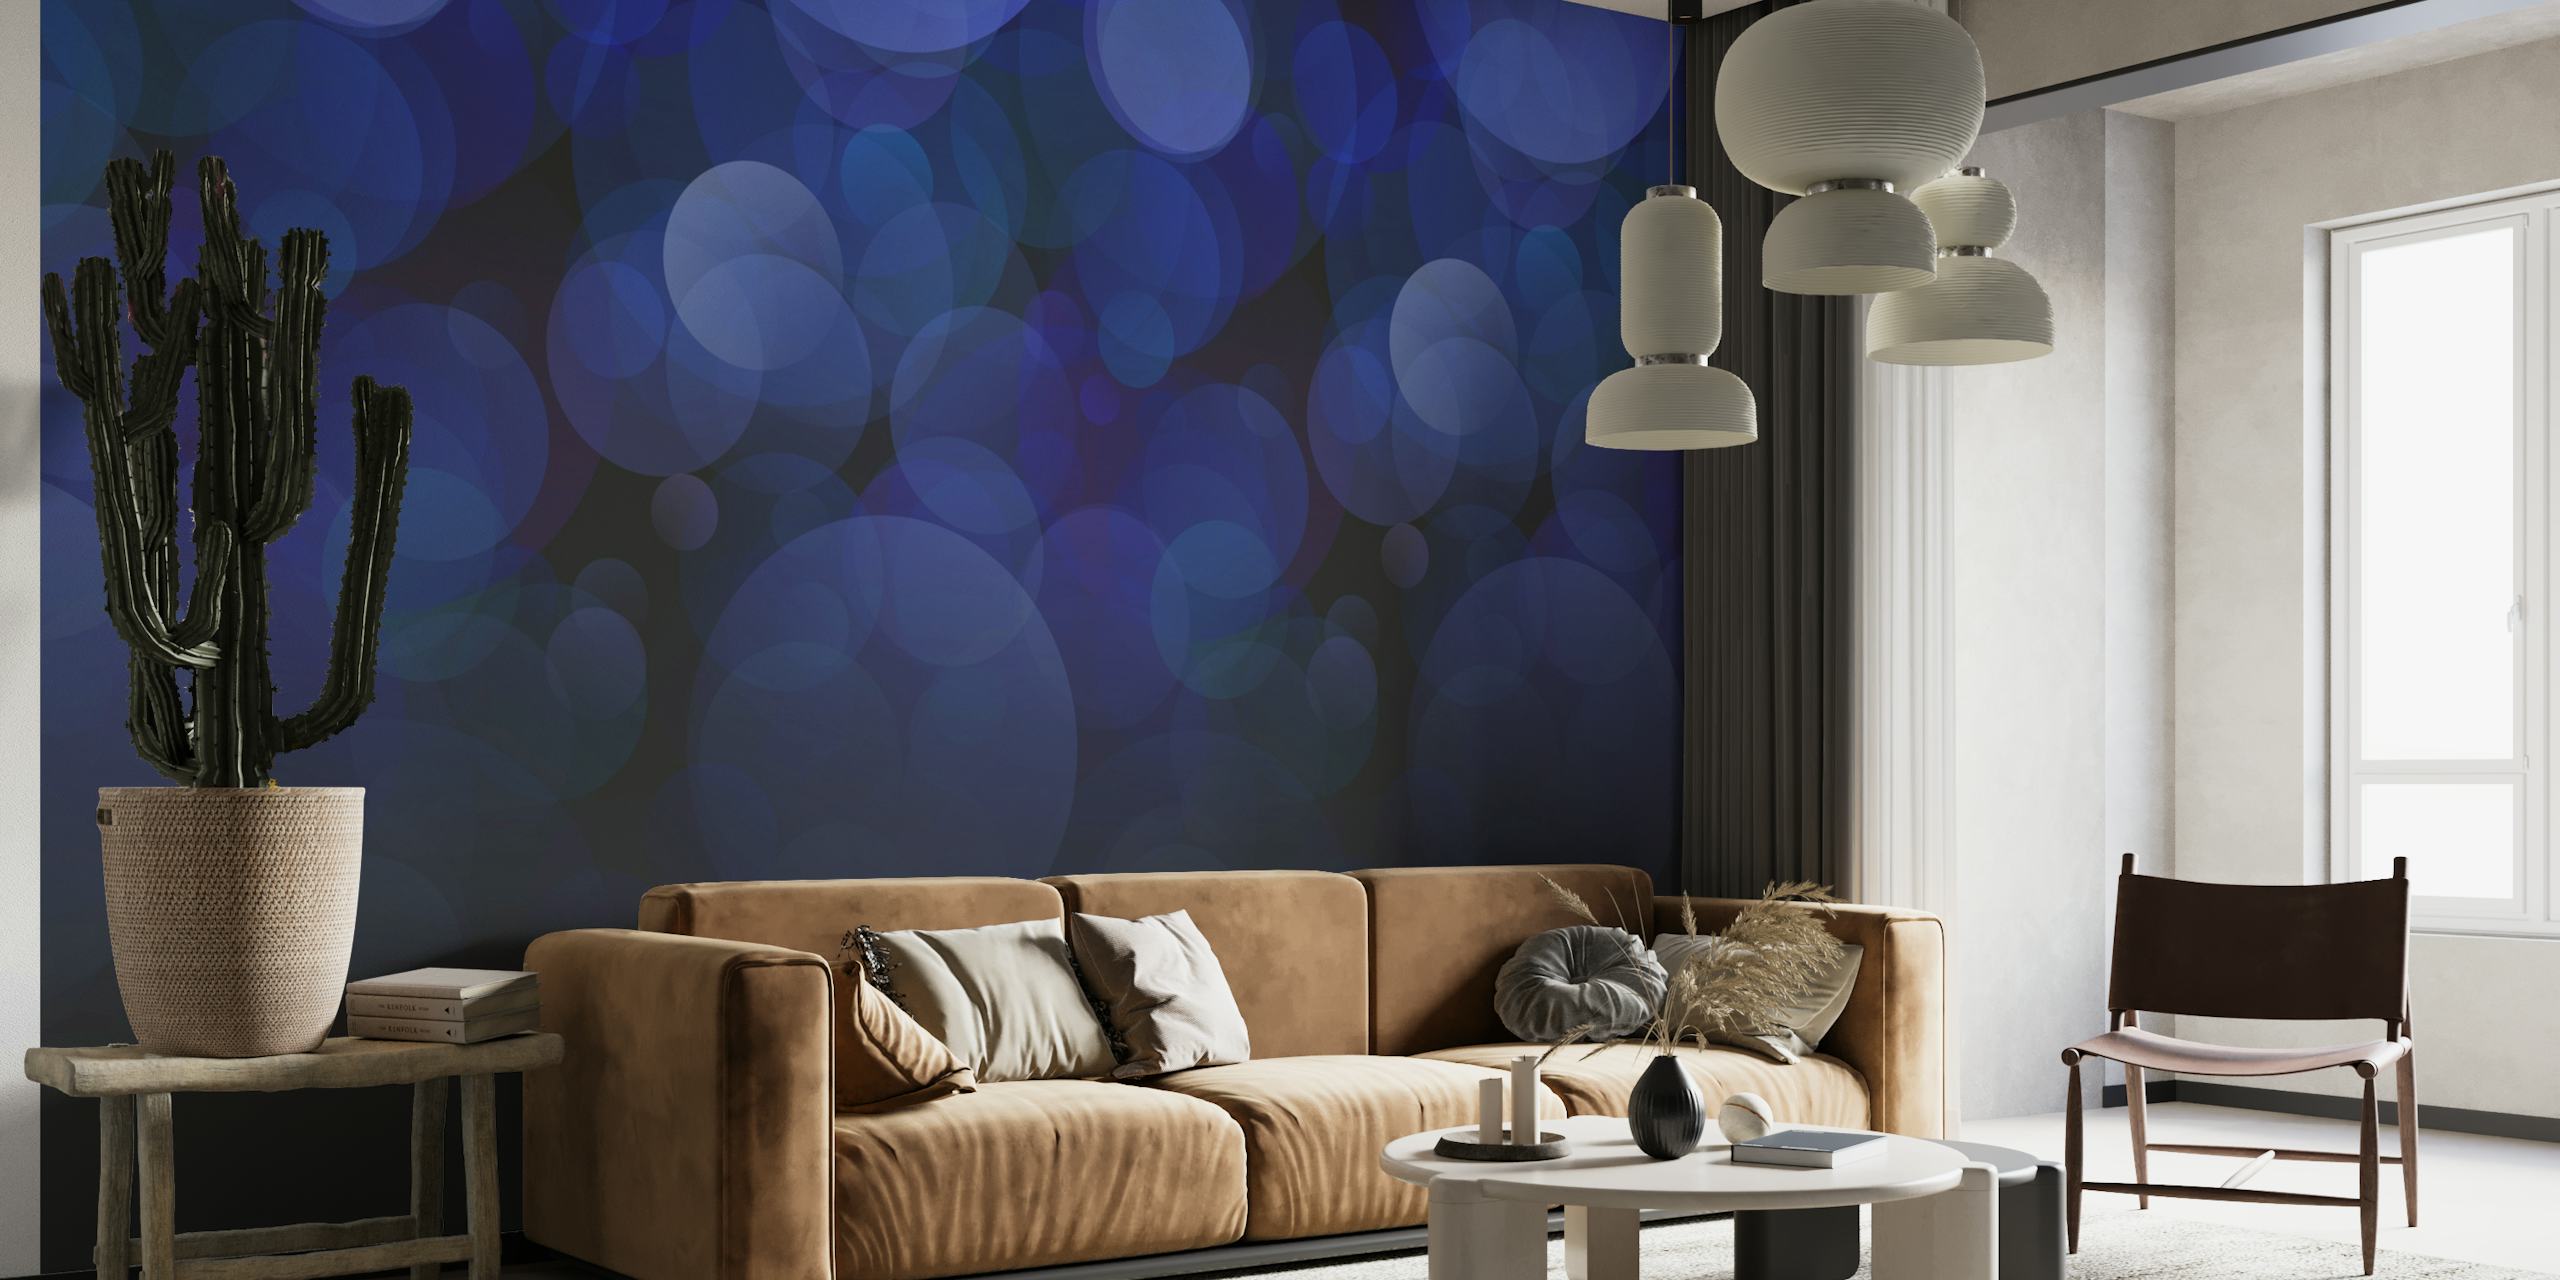 Fotomural vinílico de parede com luz bokeh azul abstrato evocando um céu noturno estrelado